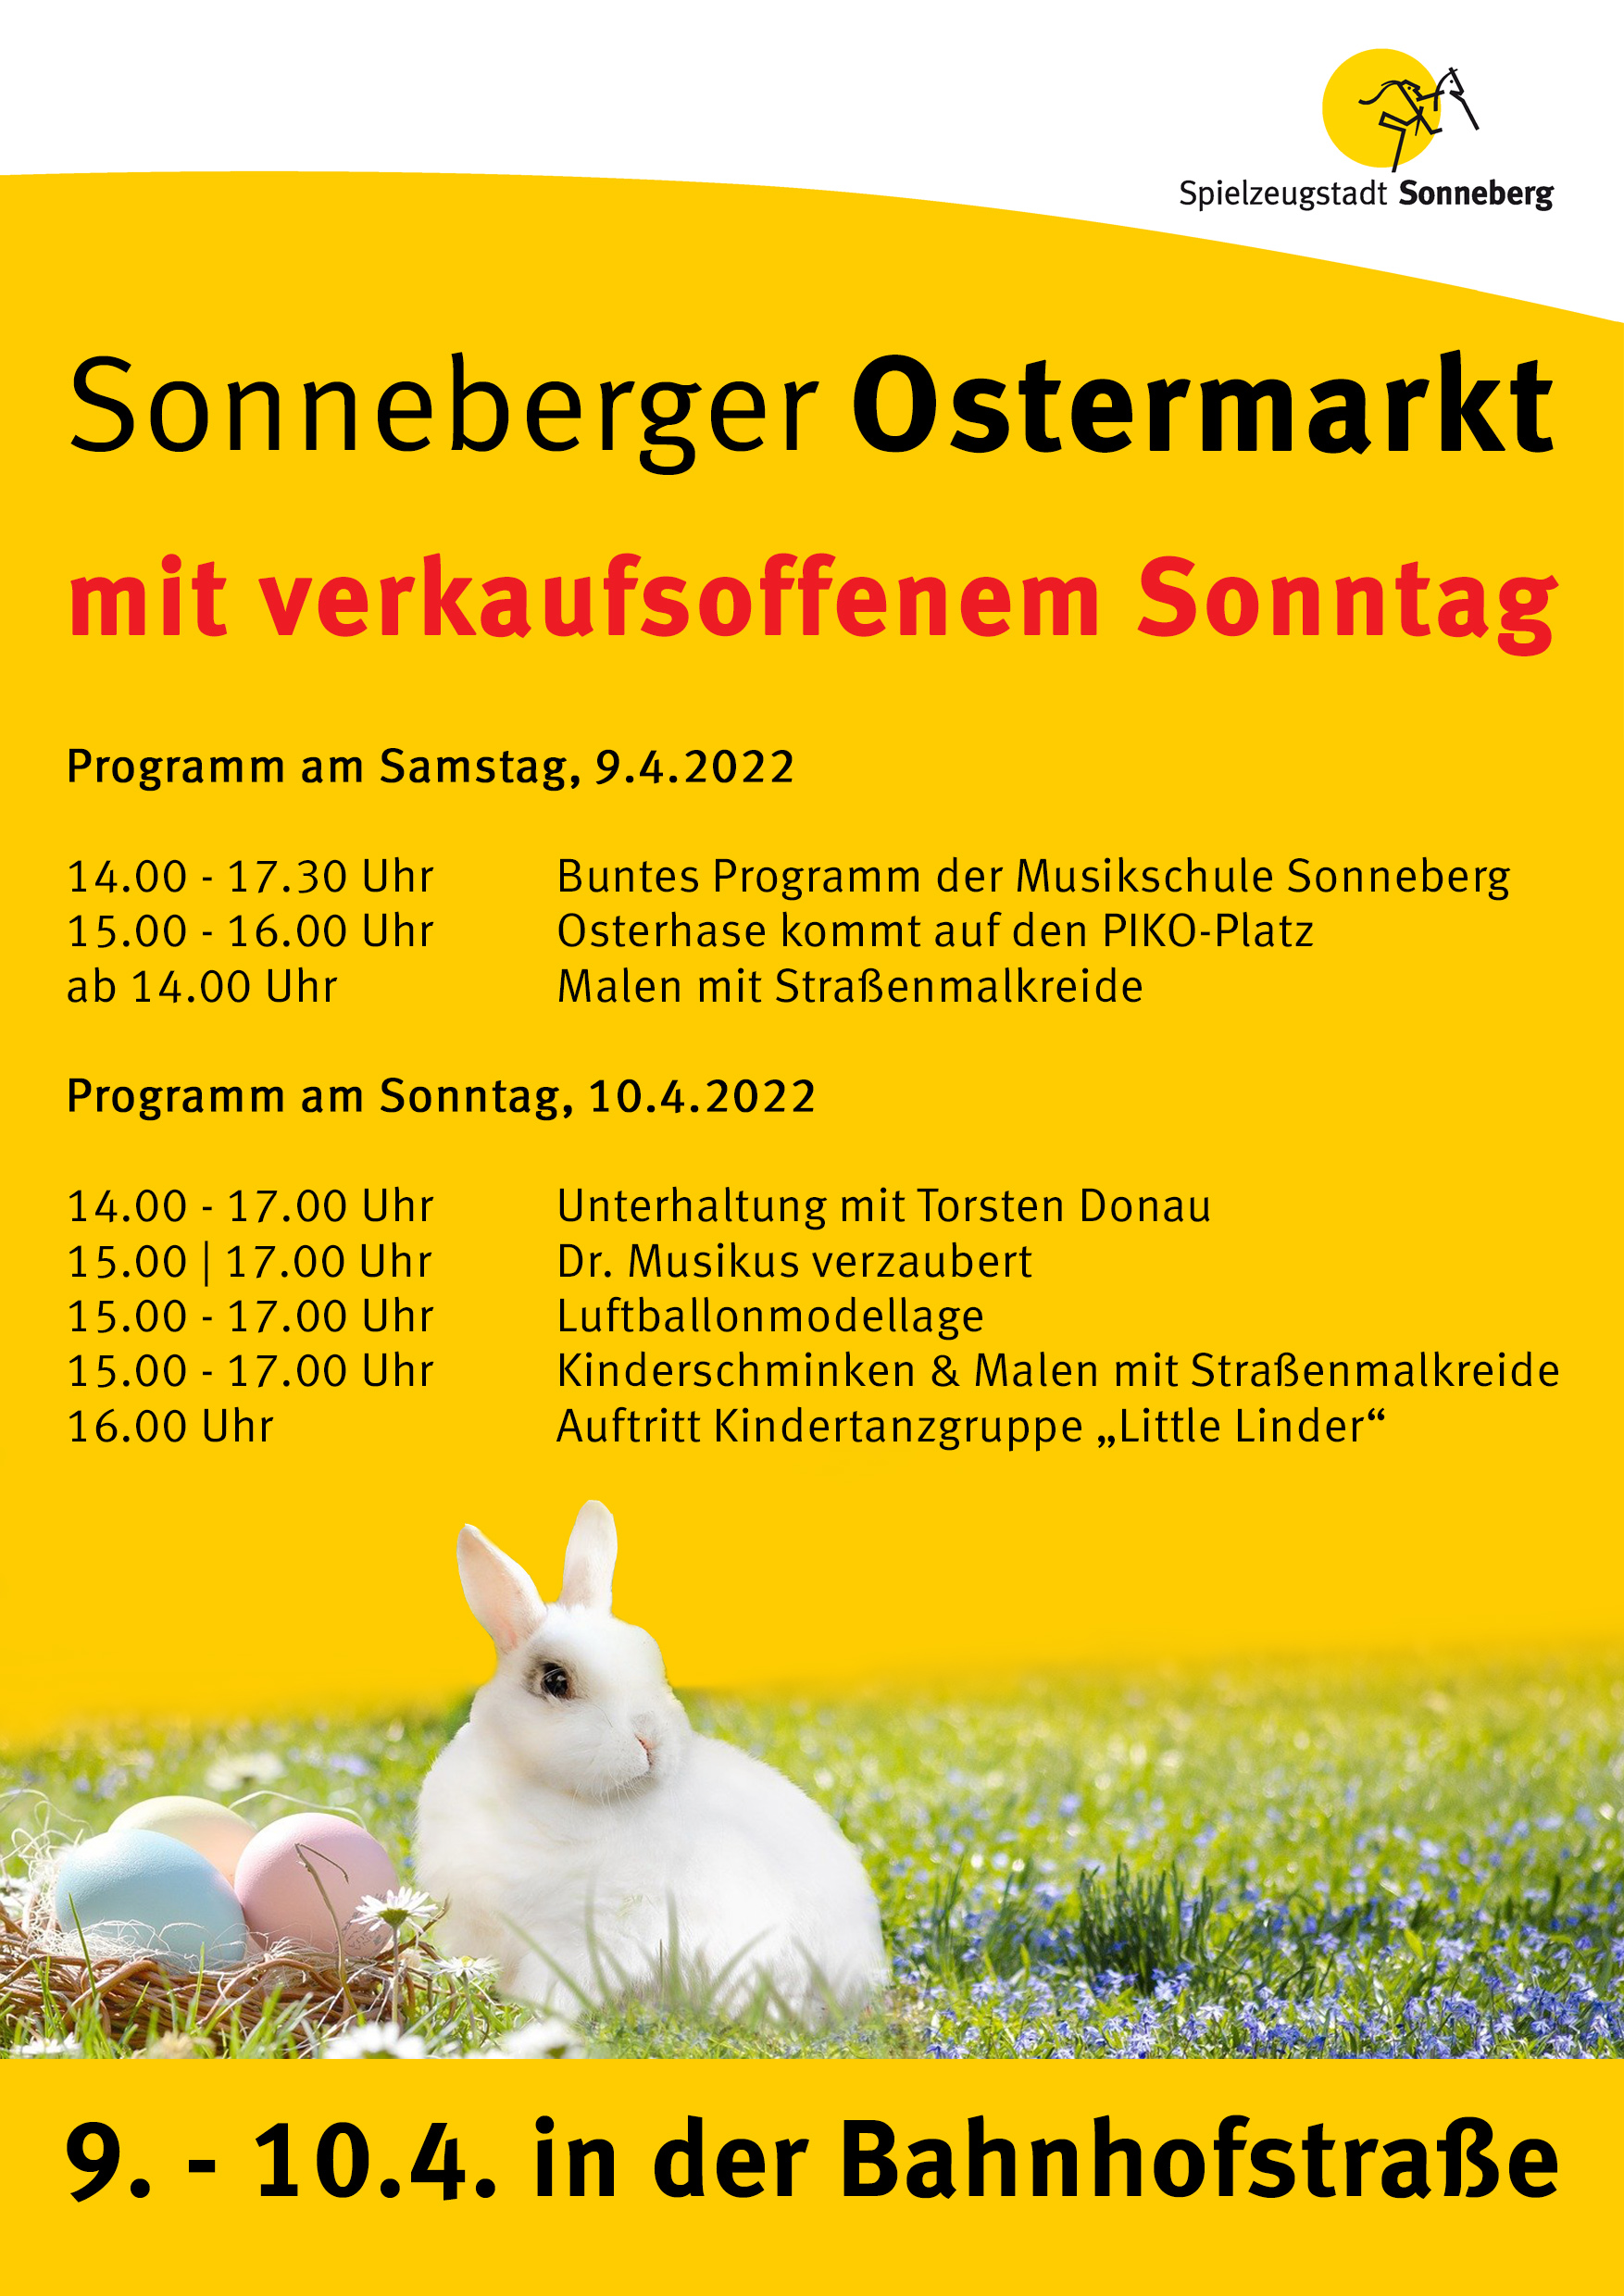 Grafik zum Sonneberger Ostermarkt mit verkaufsoffenem Sonntag. Darauf steht der Programmablauf.